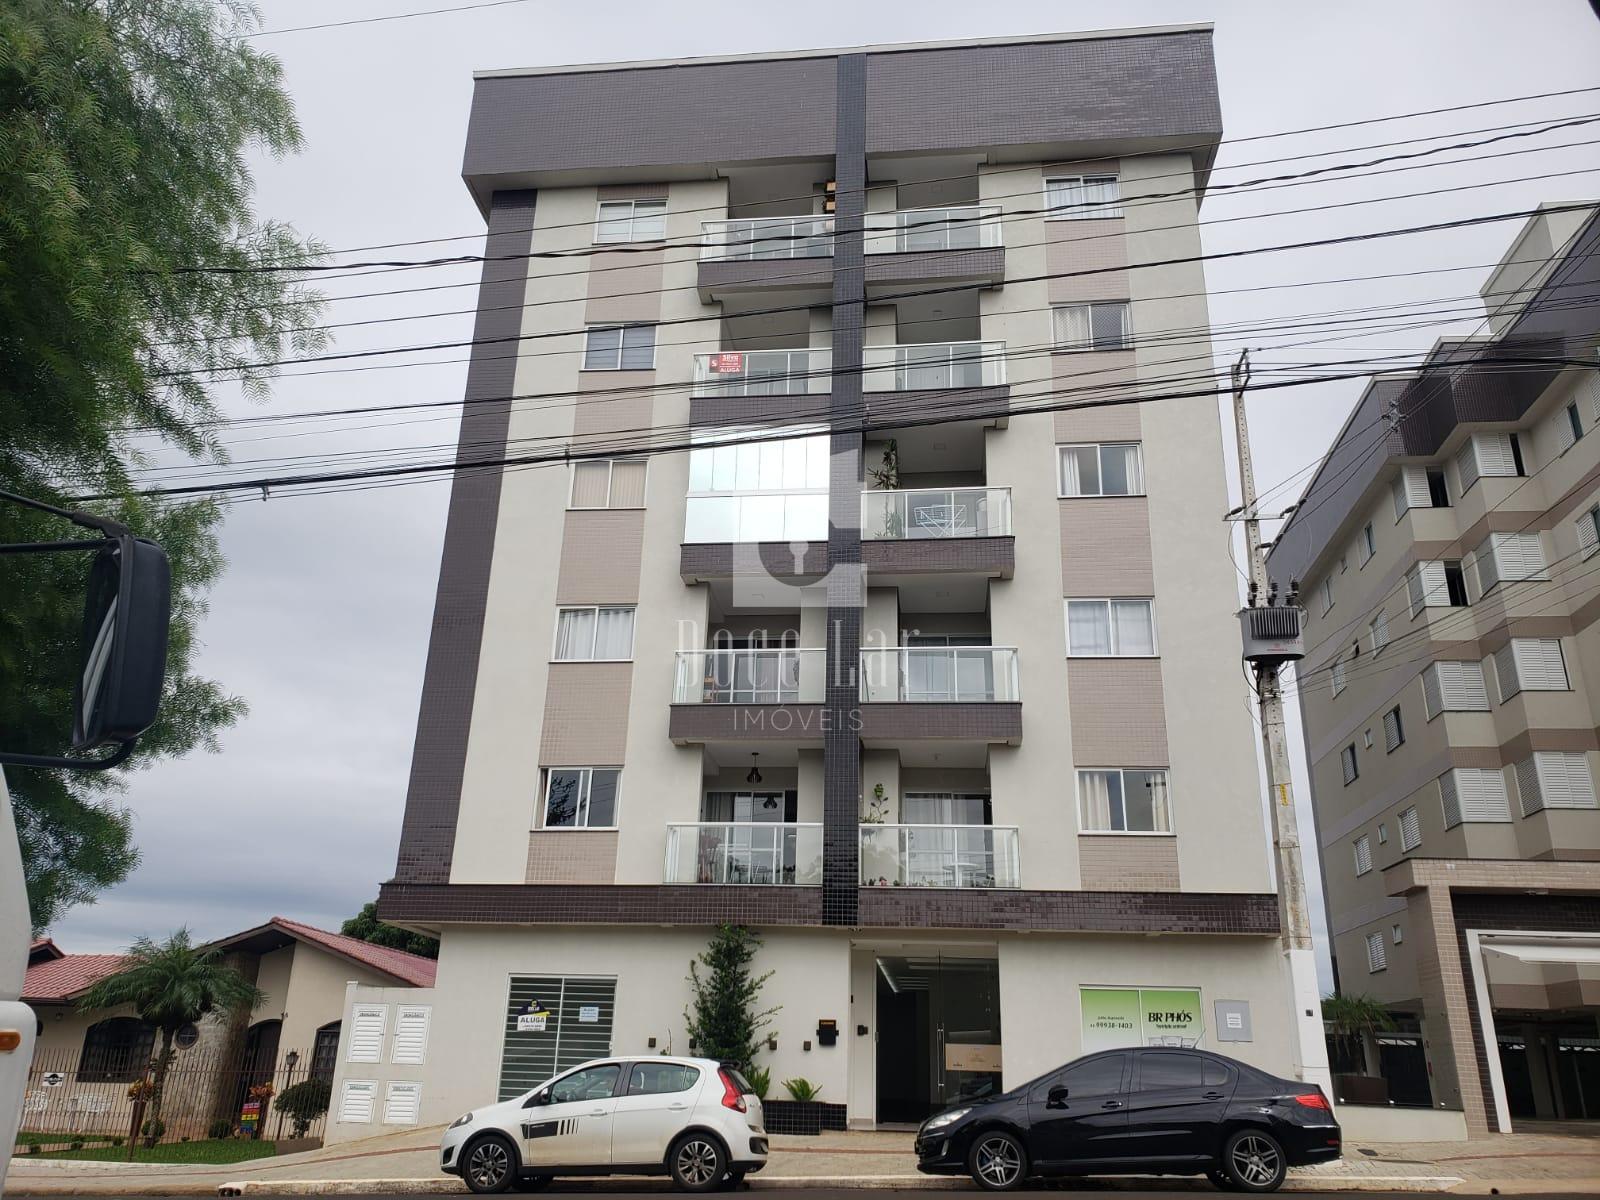 Apartamento MOBILIADO para locação, Bairro das Torres, DOIS VIZINHOS - PR